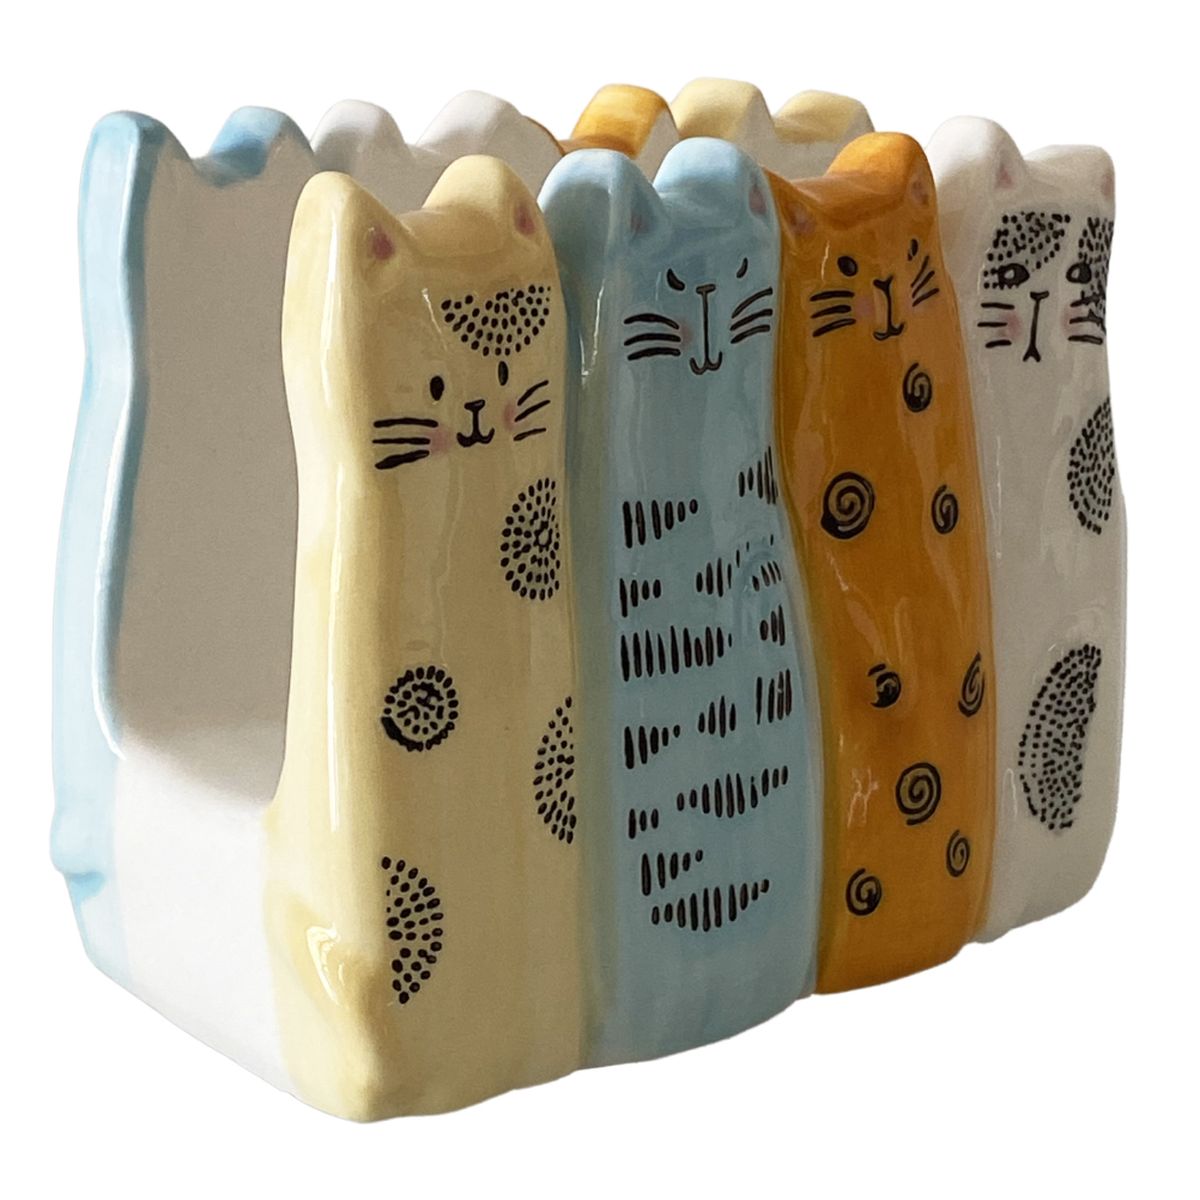 Sponge or towel holder - Cats